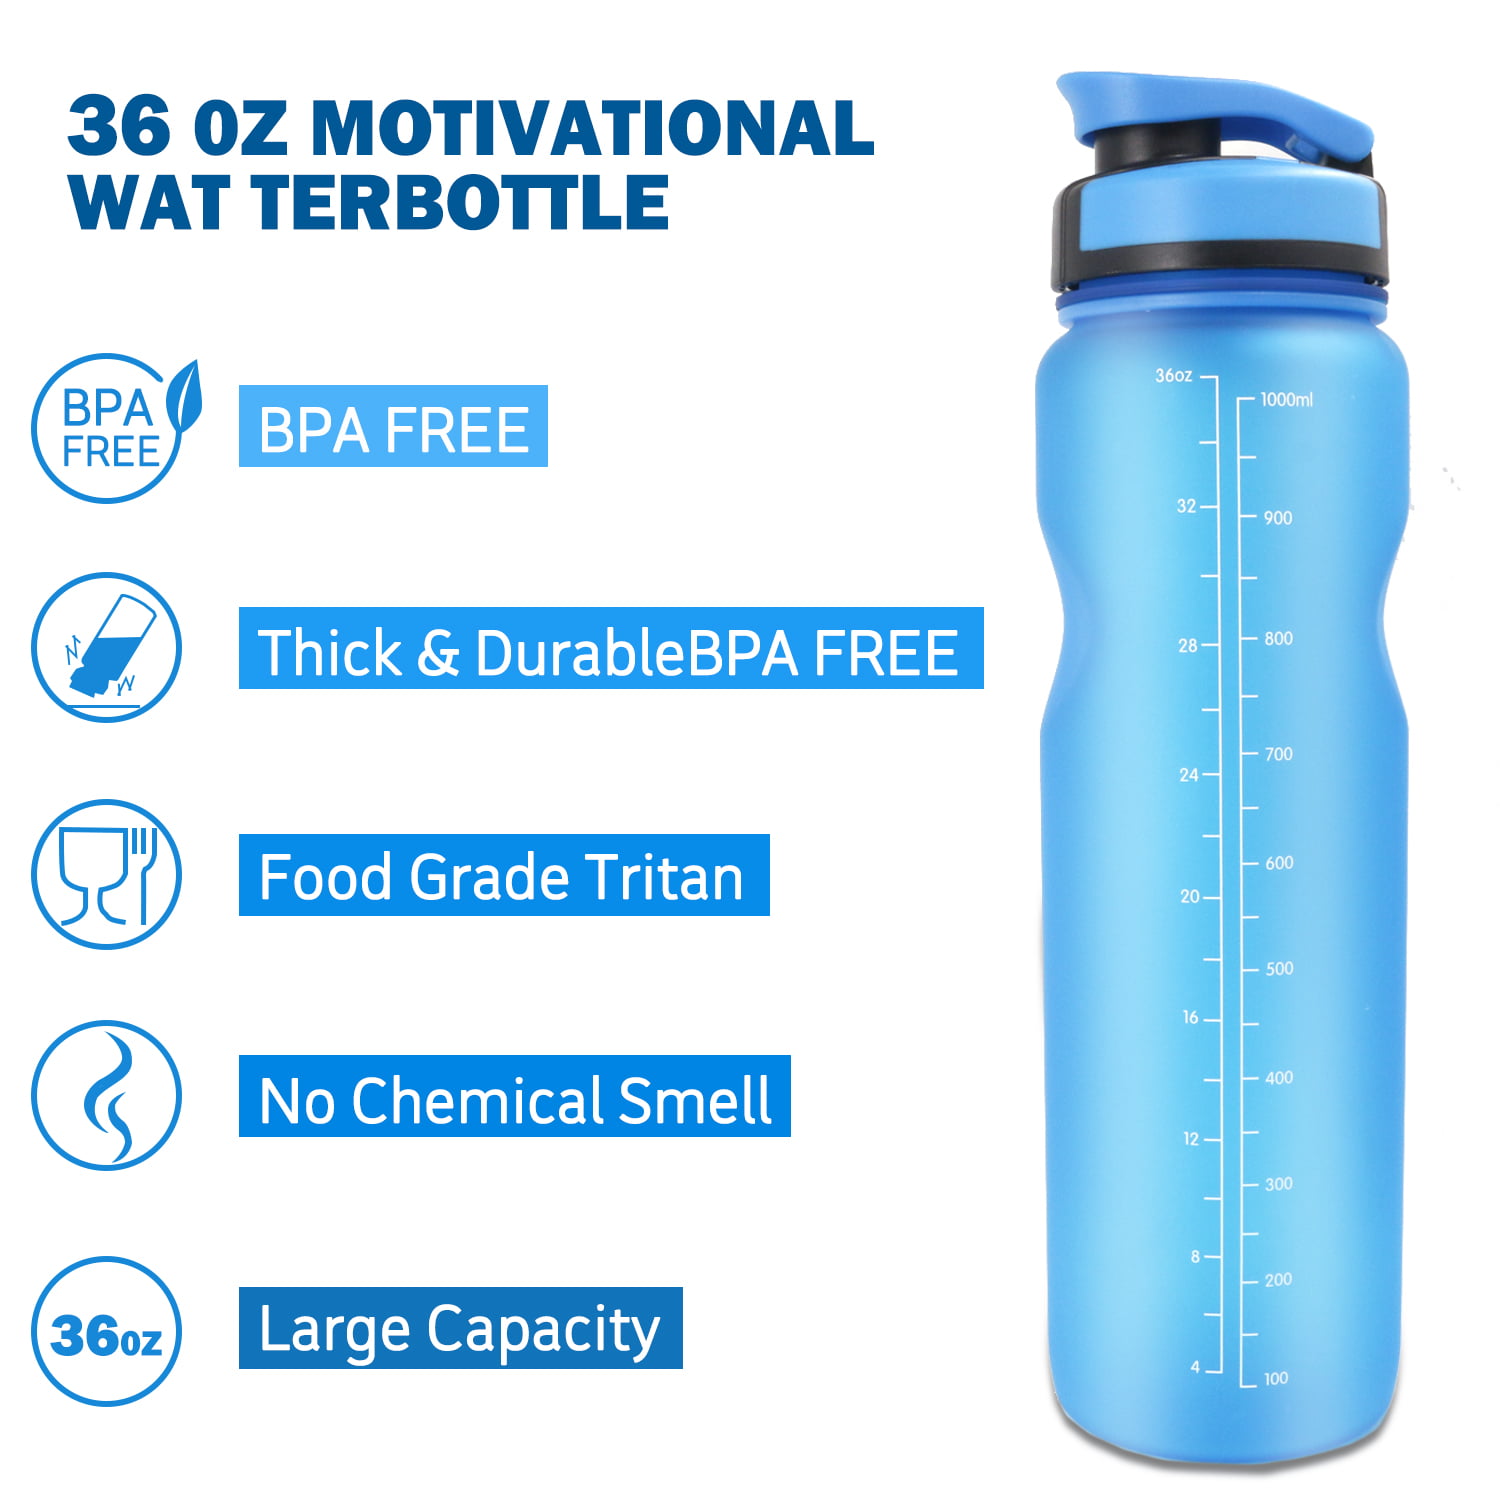 36oz Fiat Water Bottle